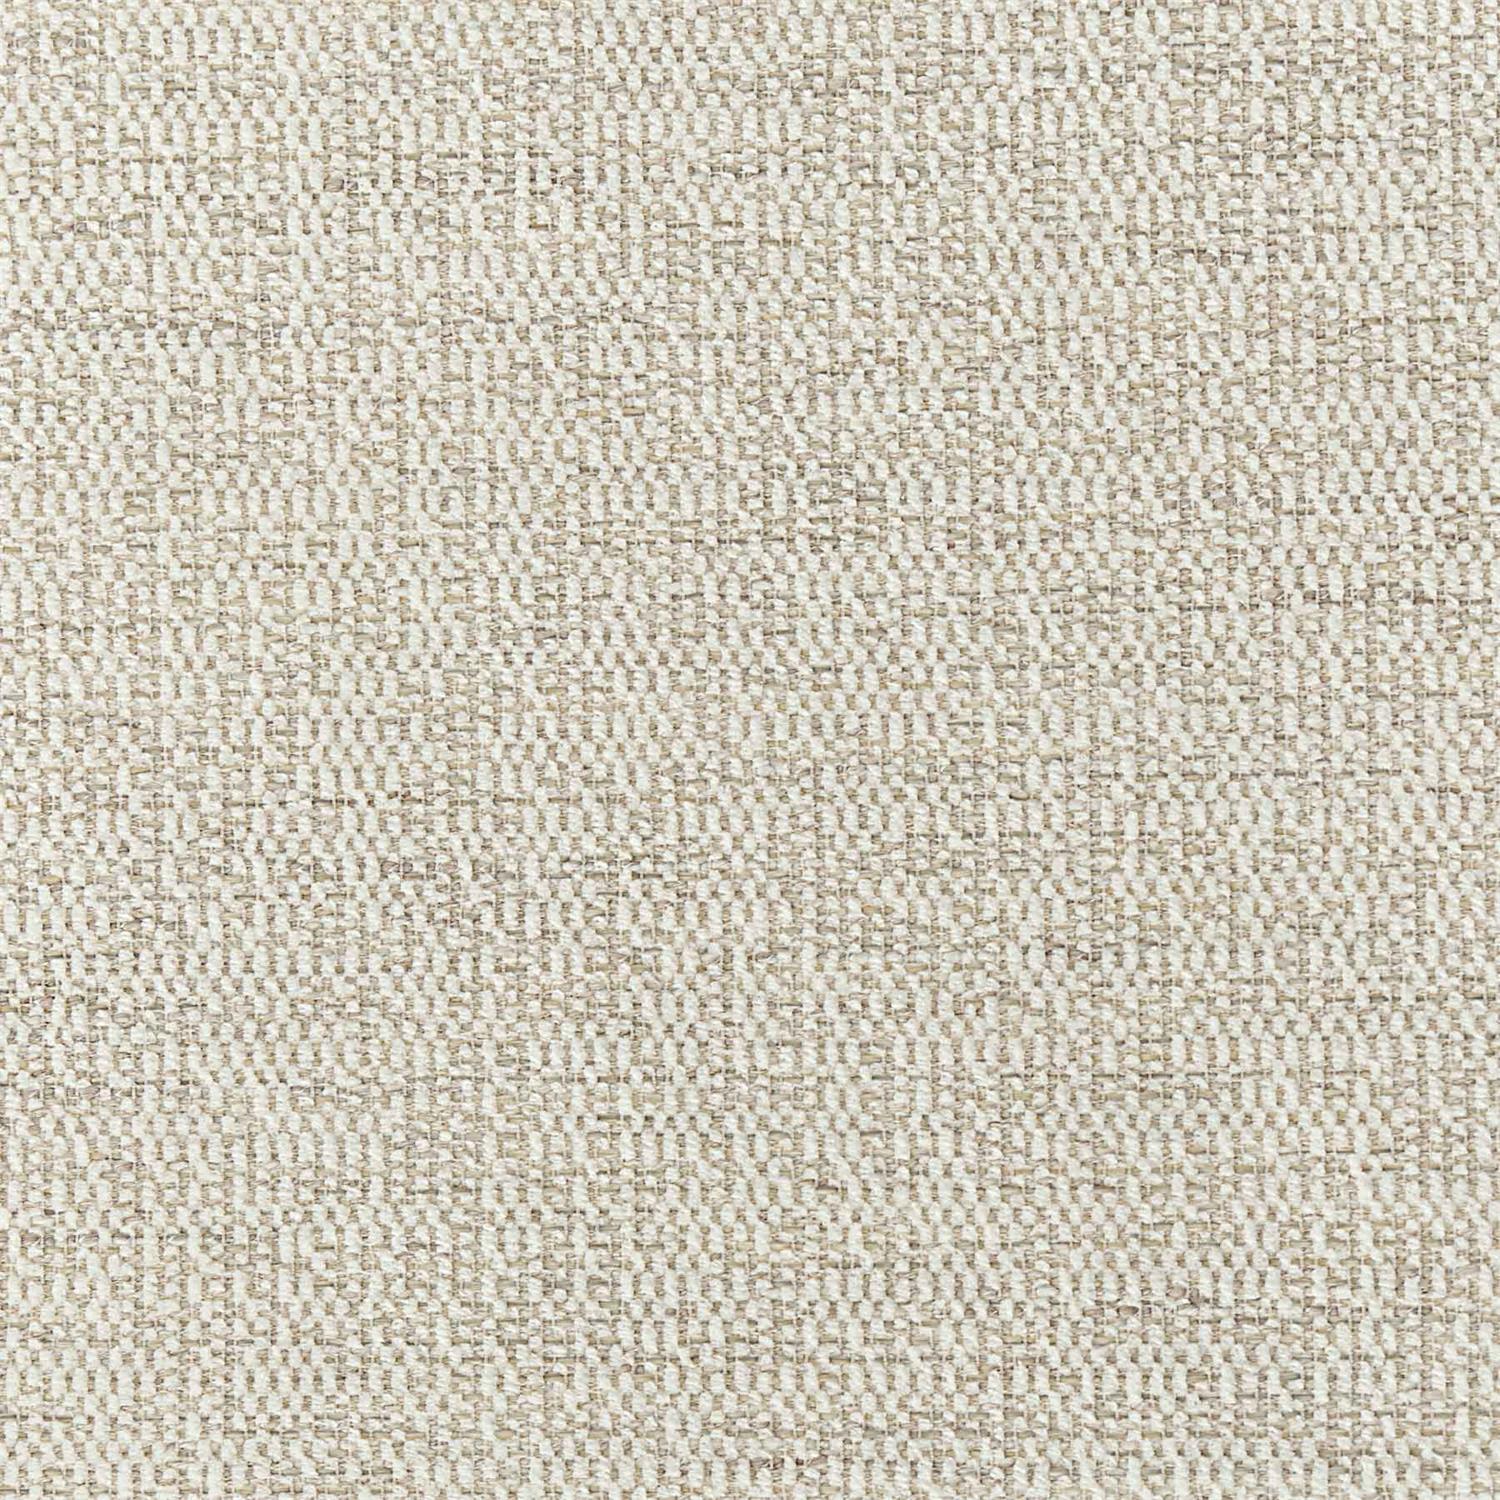 5560-002 Fabric